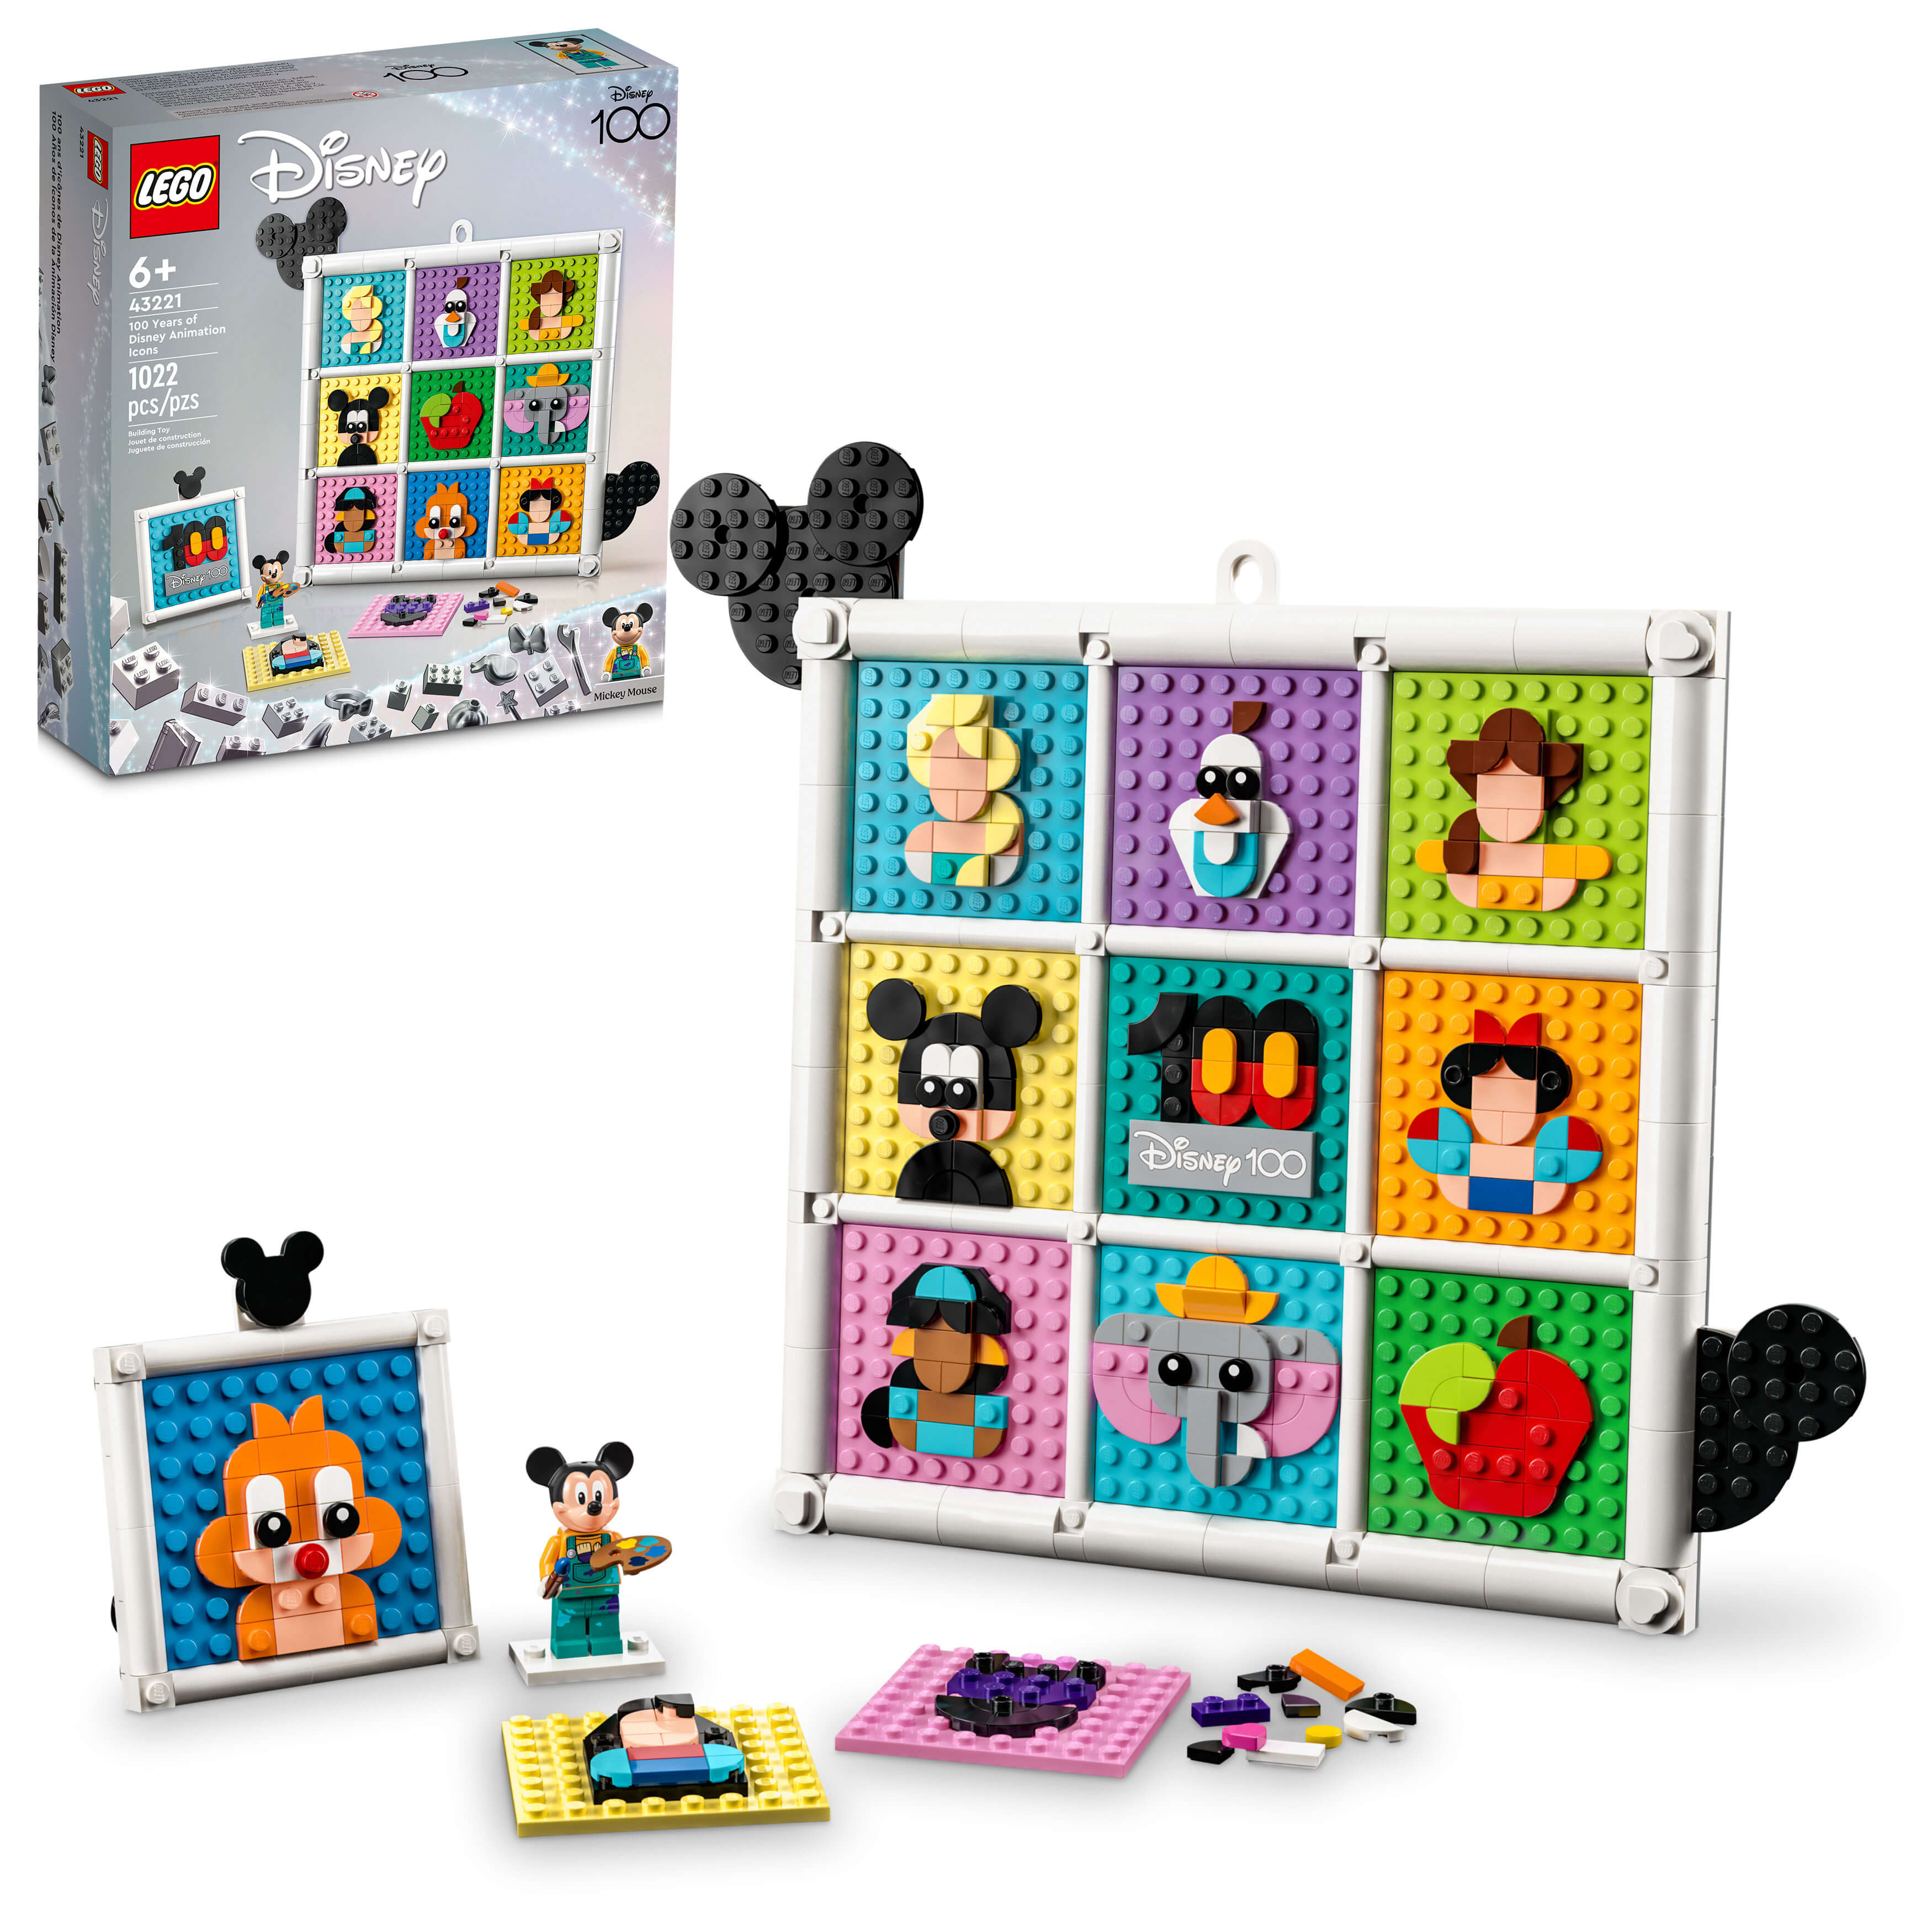 LEGO® Disney 100 Years of Disney Animation Icons 43221 Building Toy Set (1,022 Pcs)